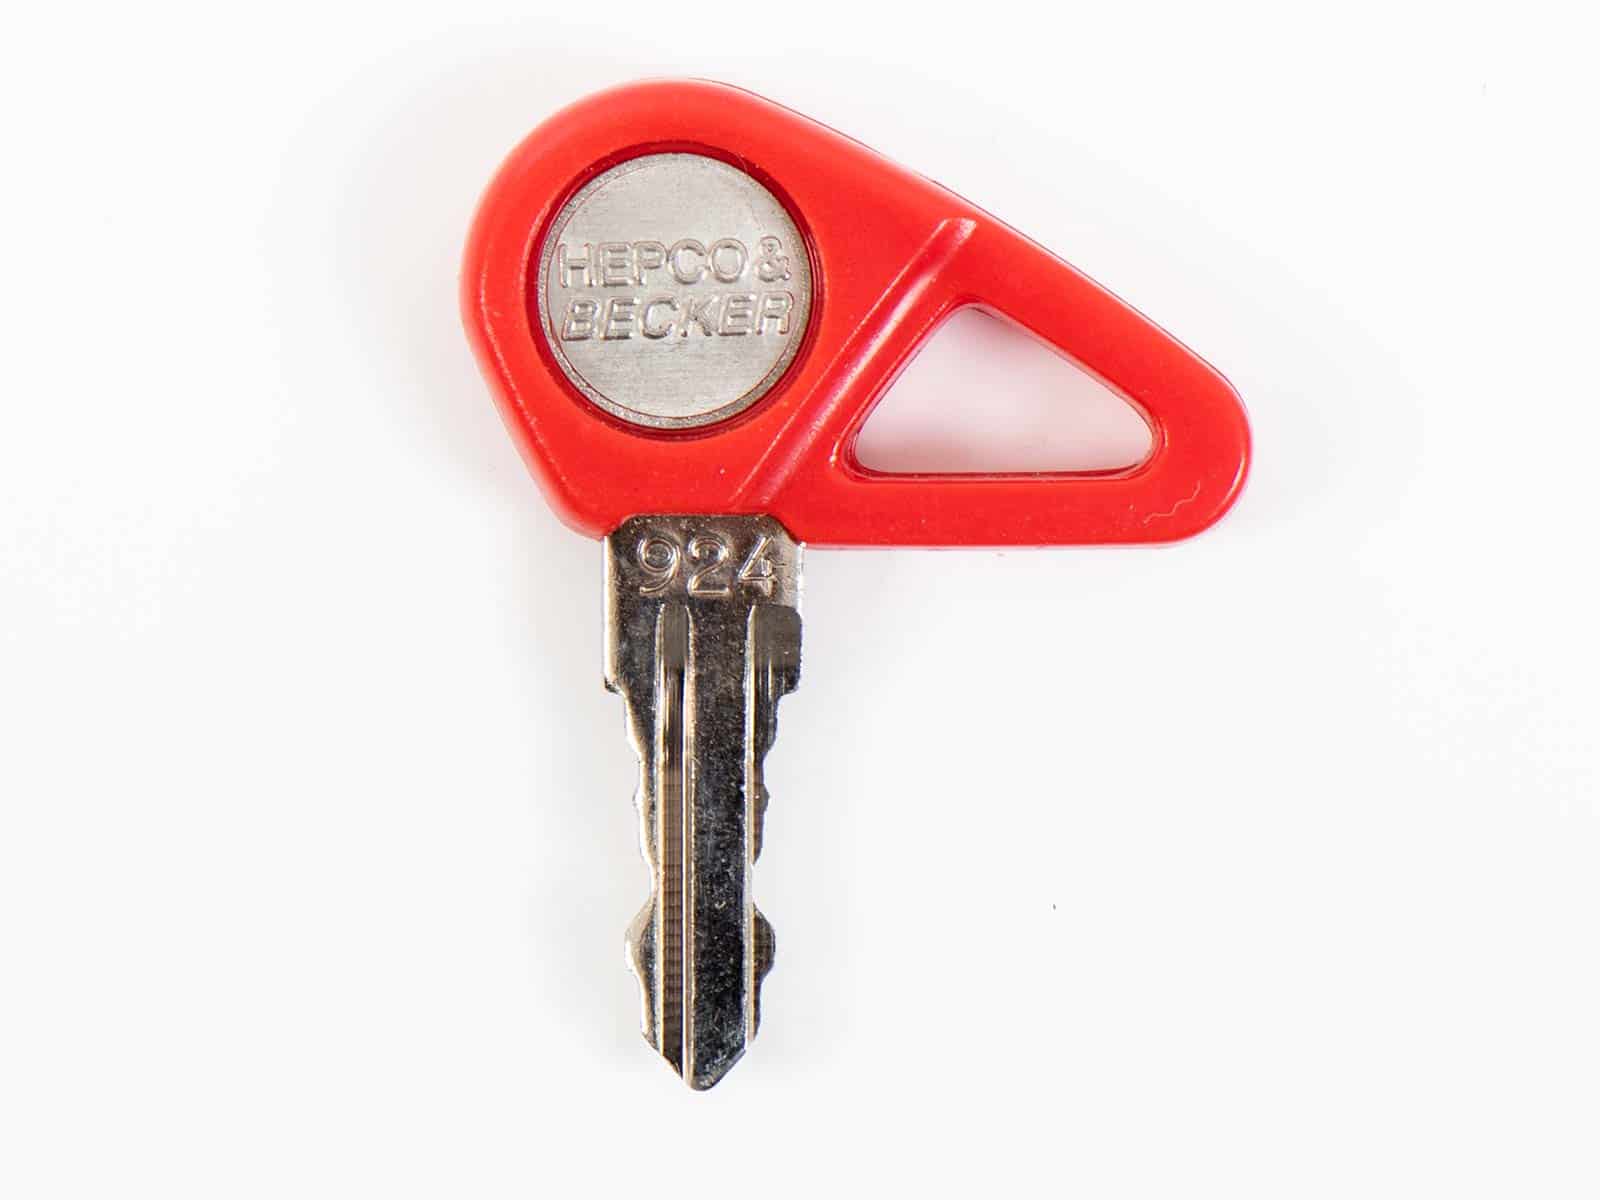 Hepco&Becker Spare key (1pcs)